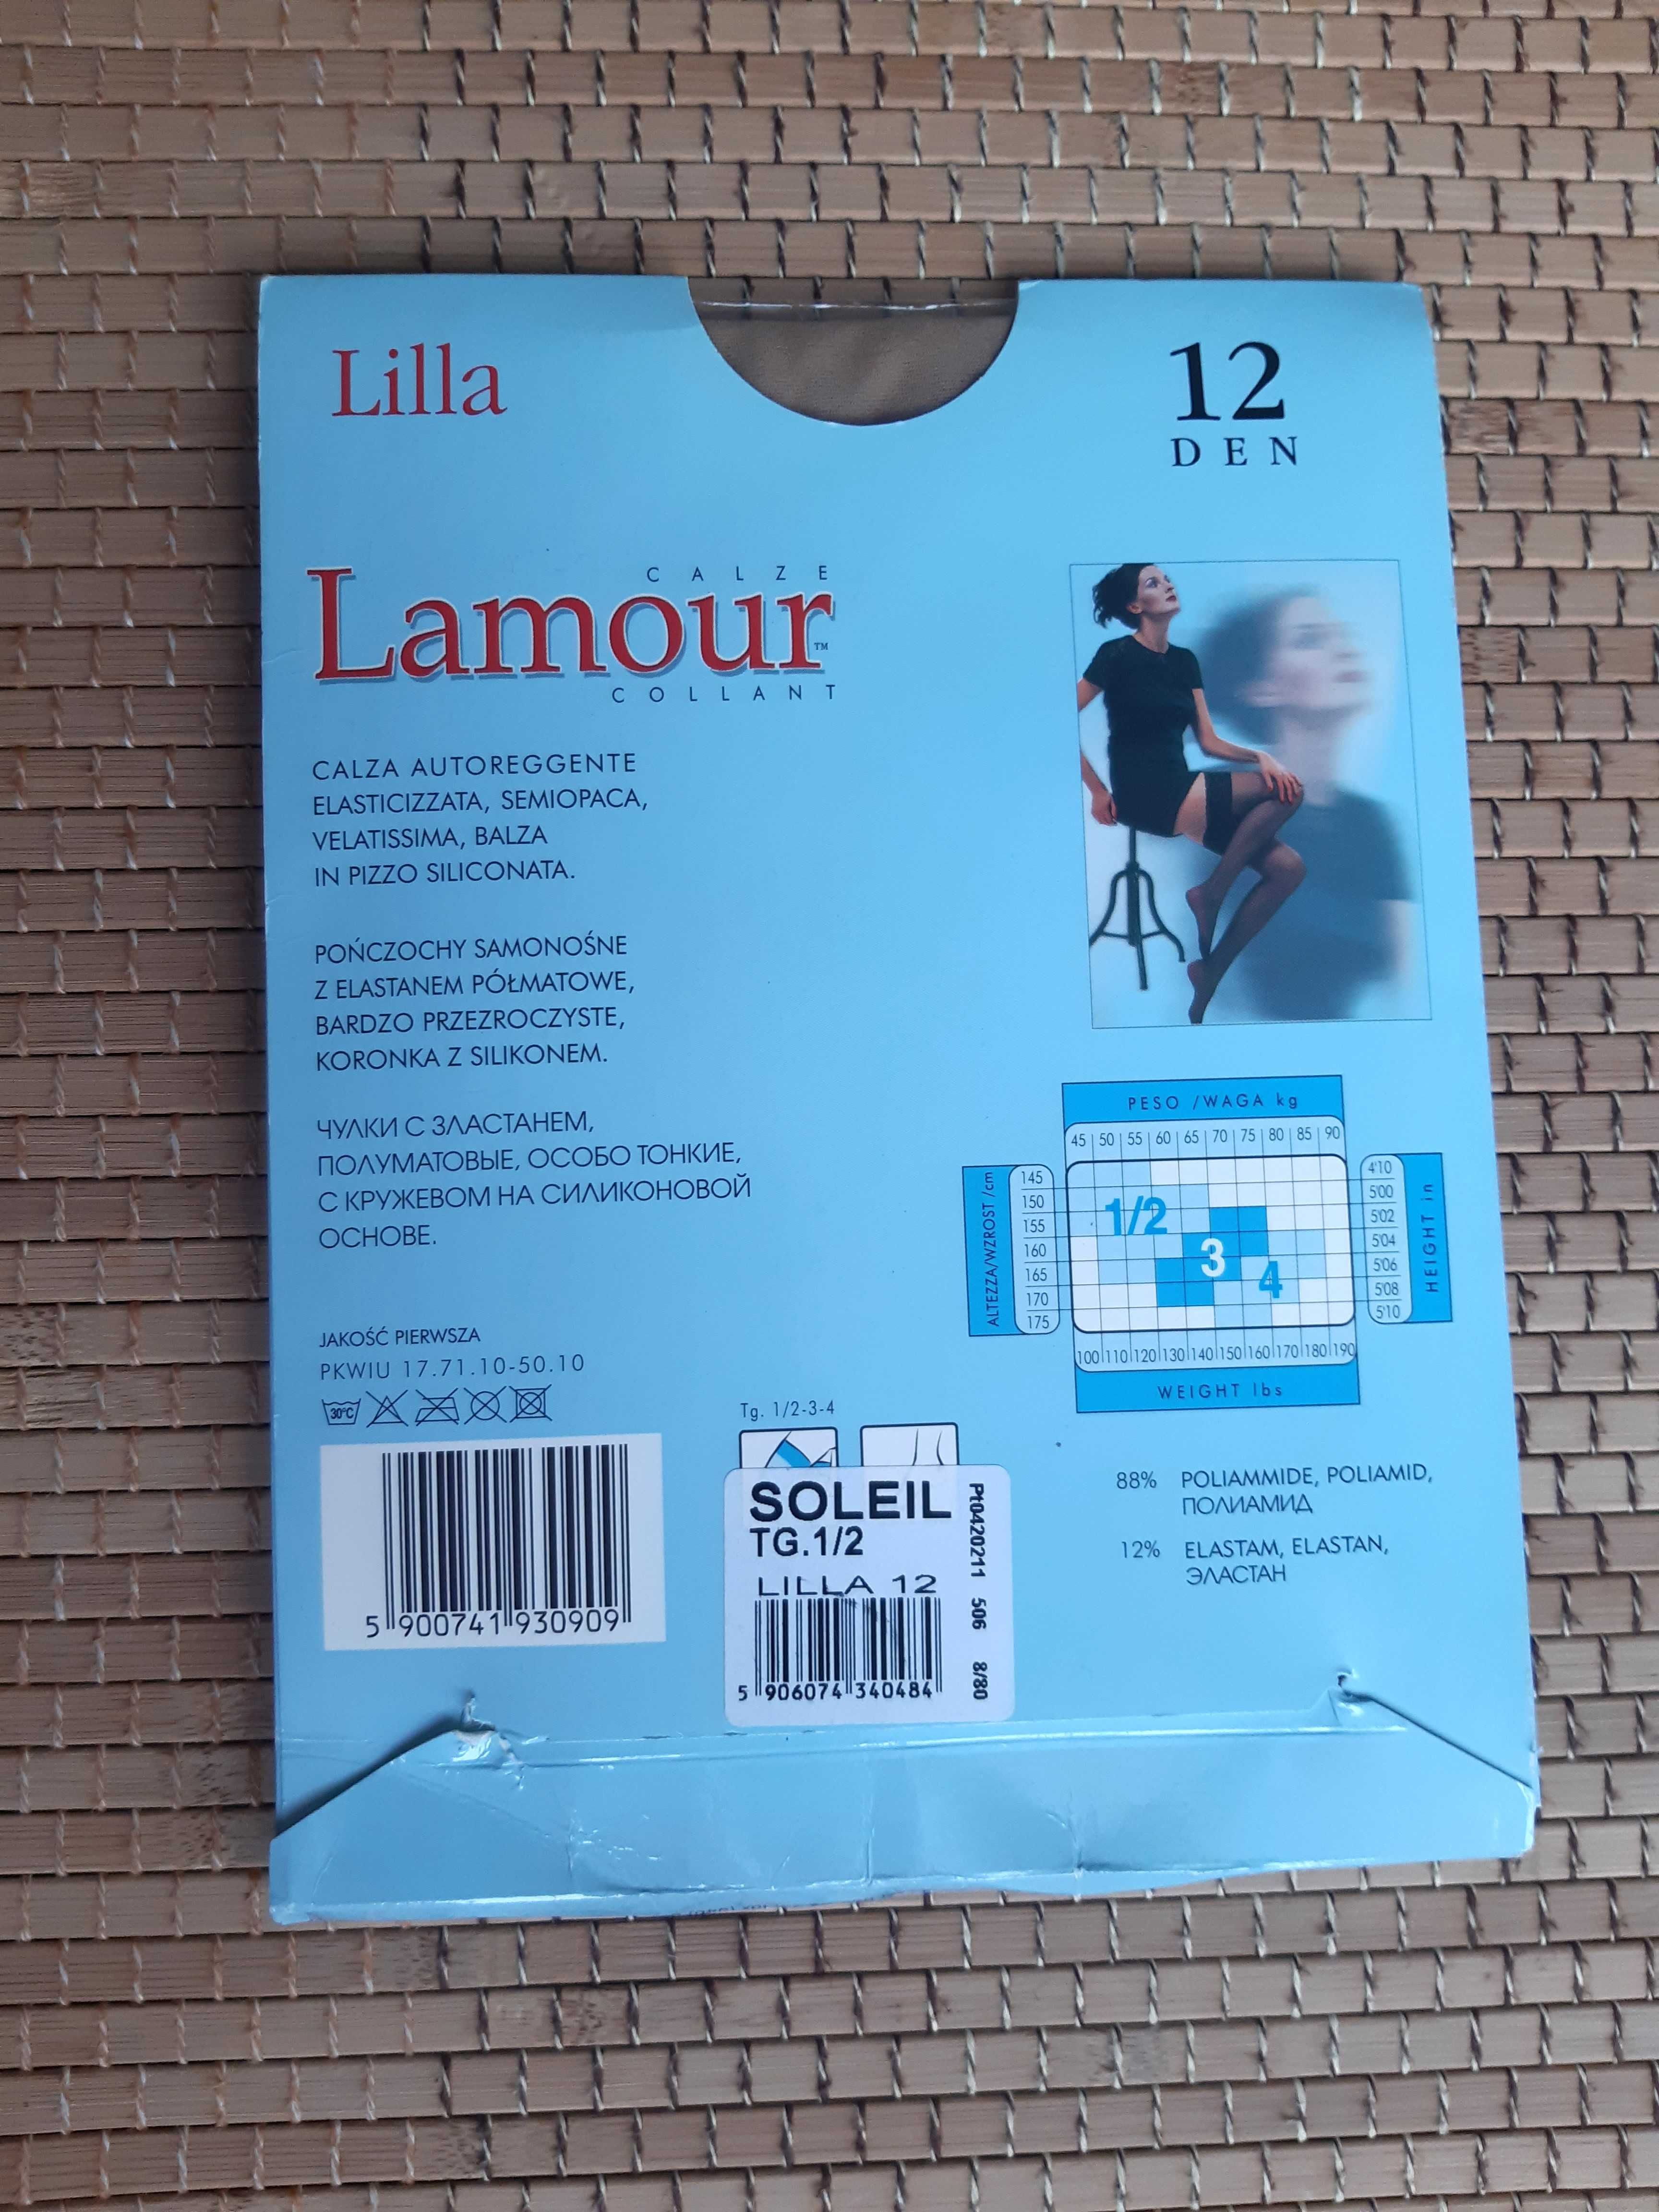 Pończochy samonośne Lamour Lilla 12 DEN, roz 1/2 S, cielisty jasny beż